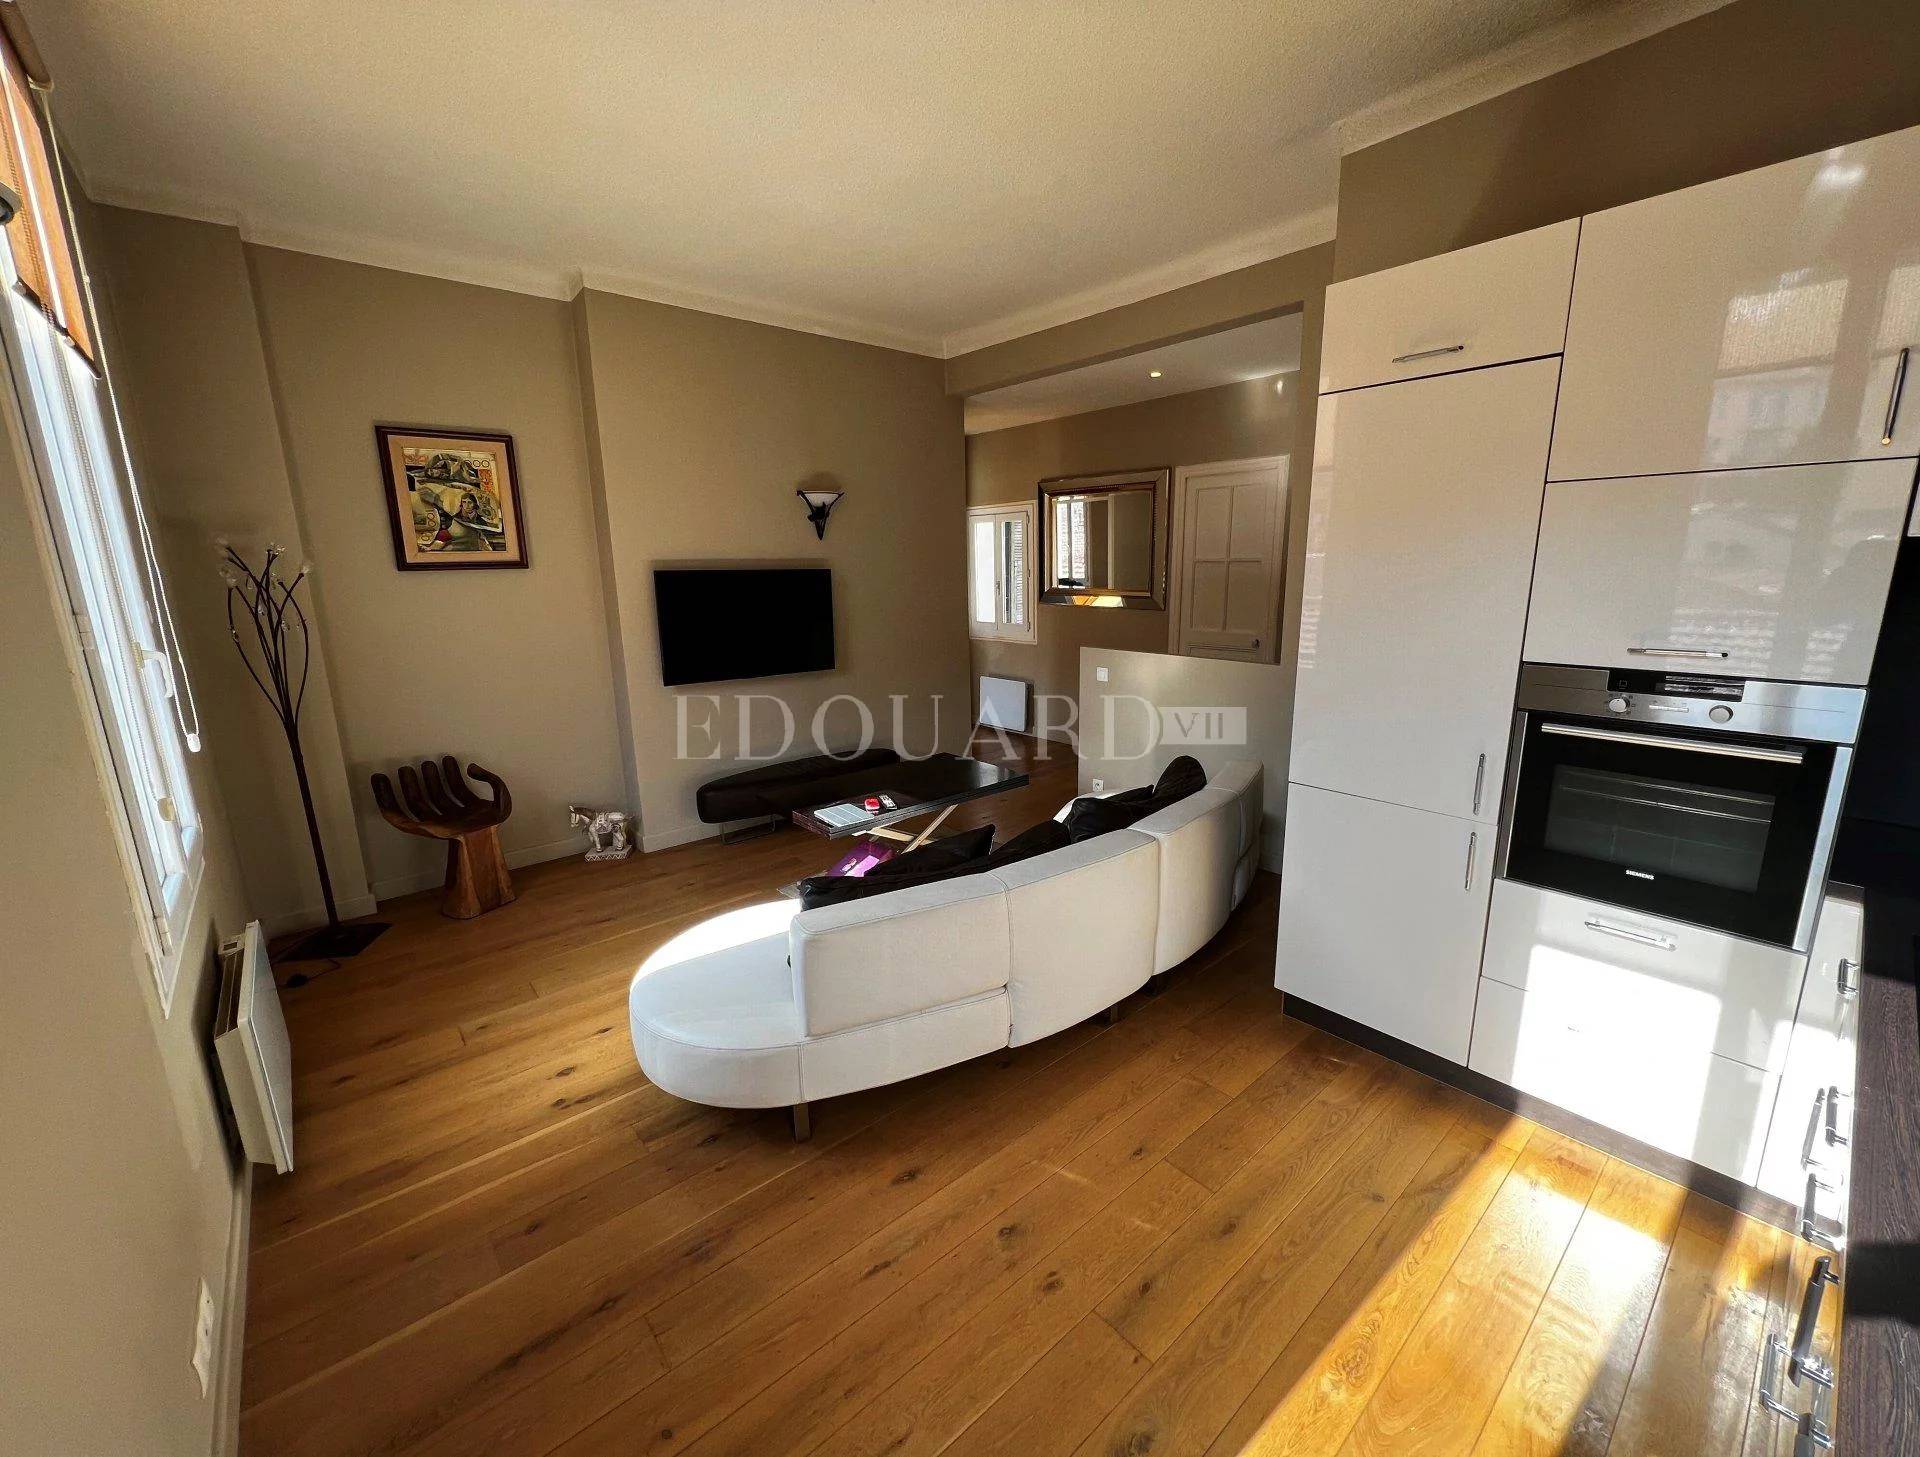 1 Bed, 1 Bath, ApartmentFor Sale, Menton, Alpes-Maritimes